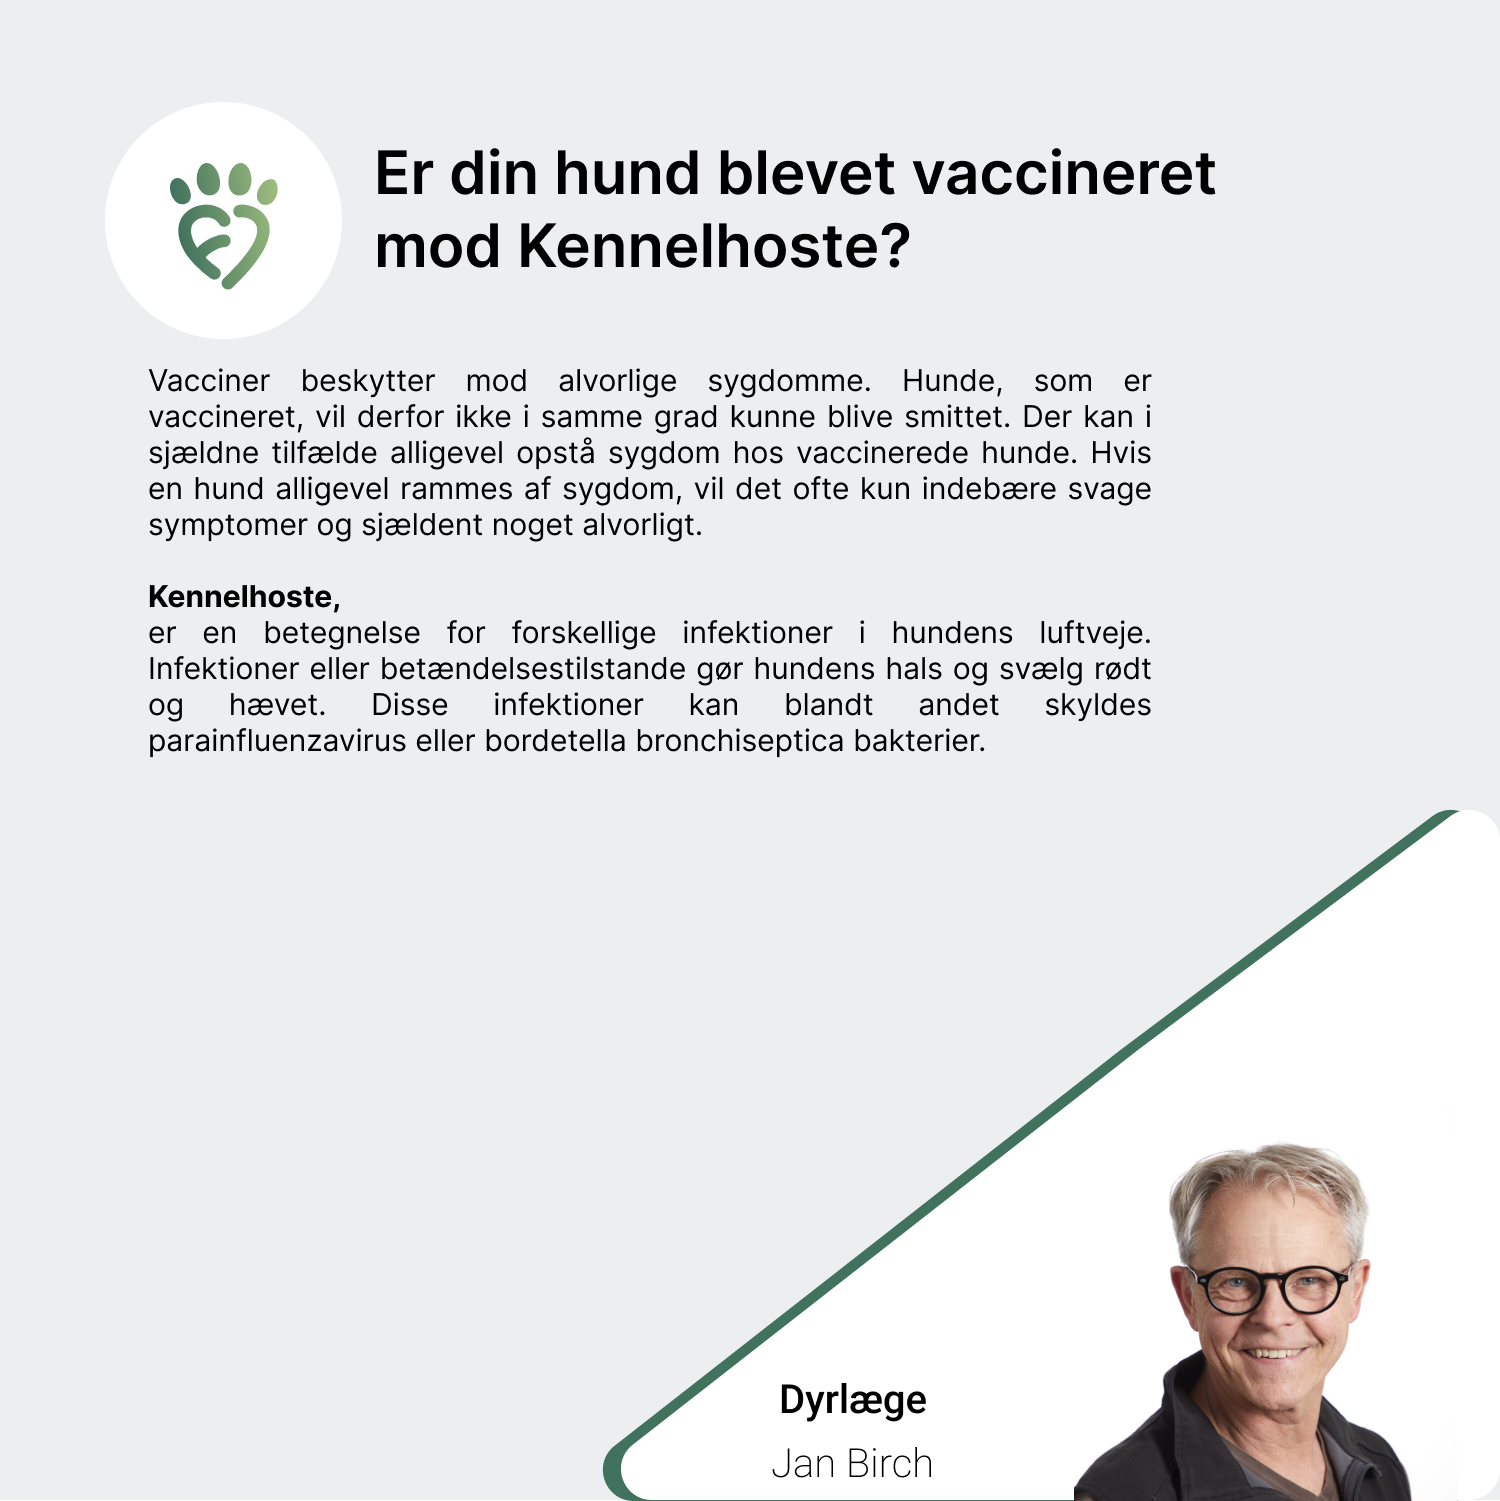 Er din hund blevet vaccineret mod Kennelhoste_